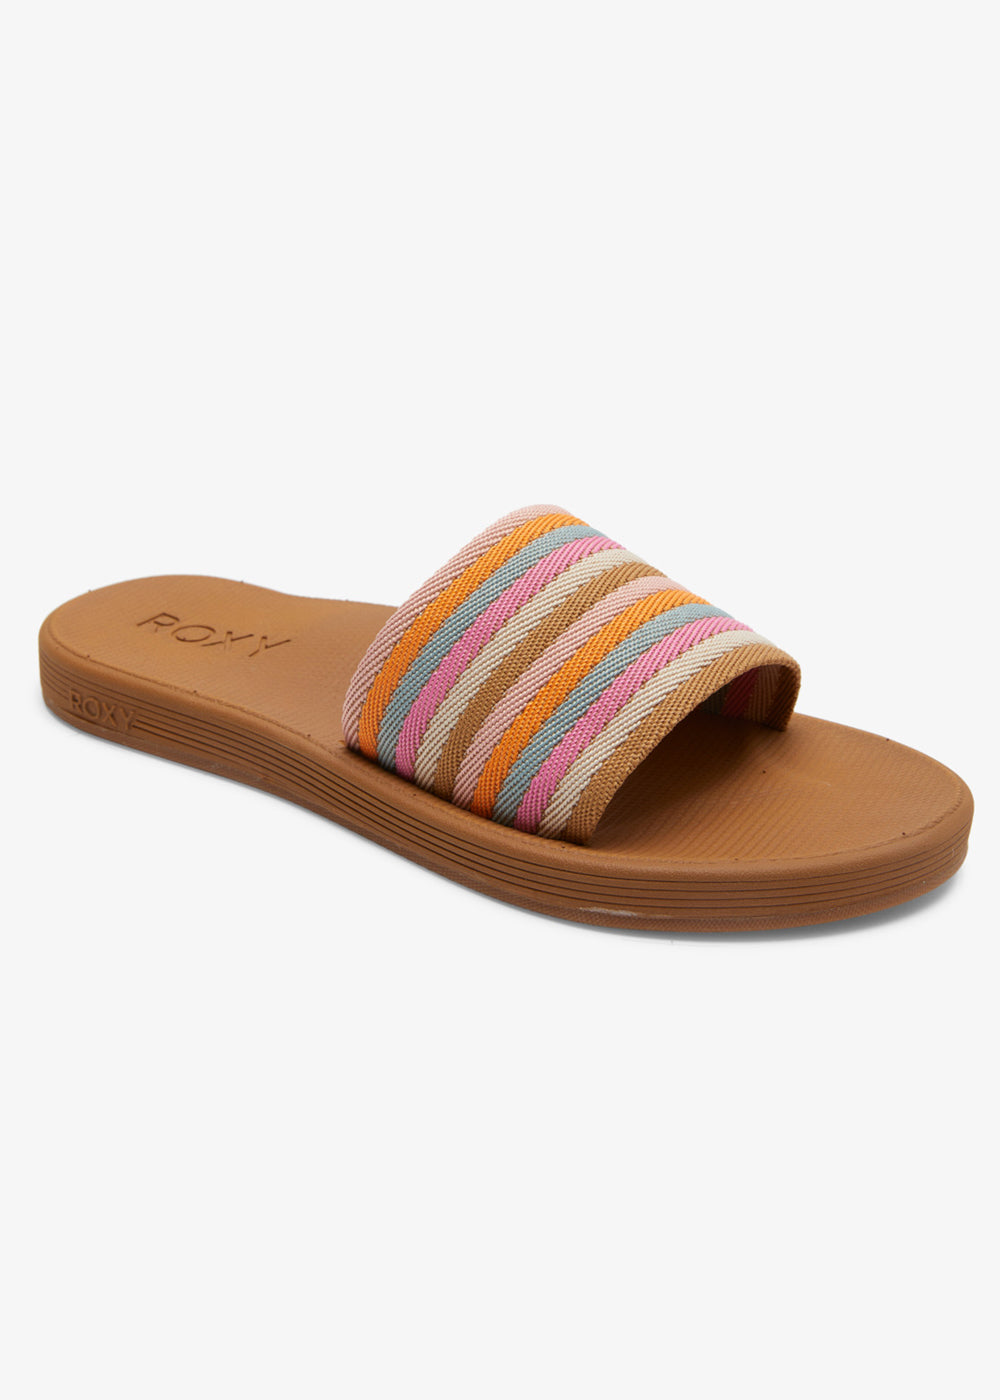 Beachie Breeze Sandals by Roxy